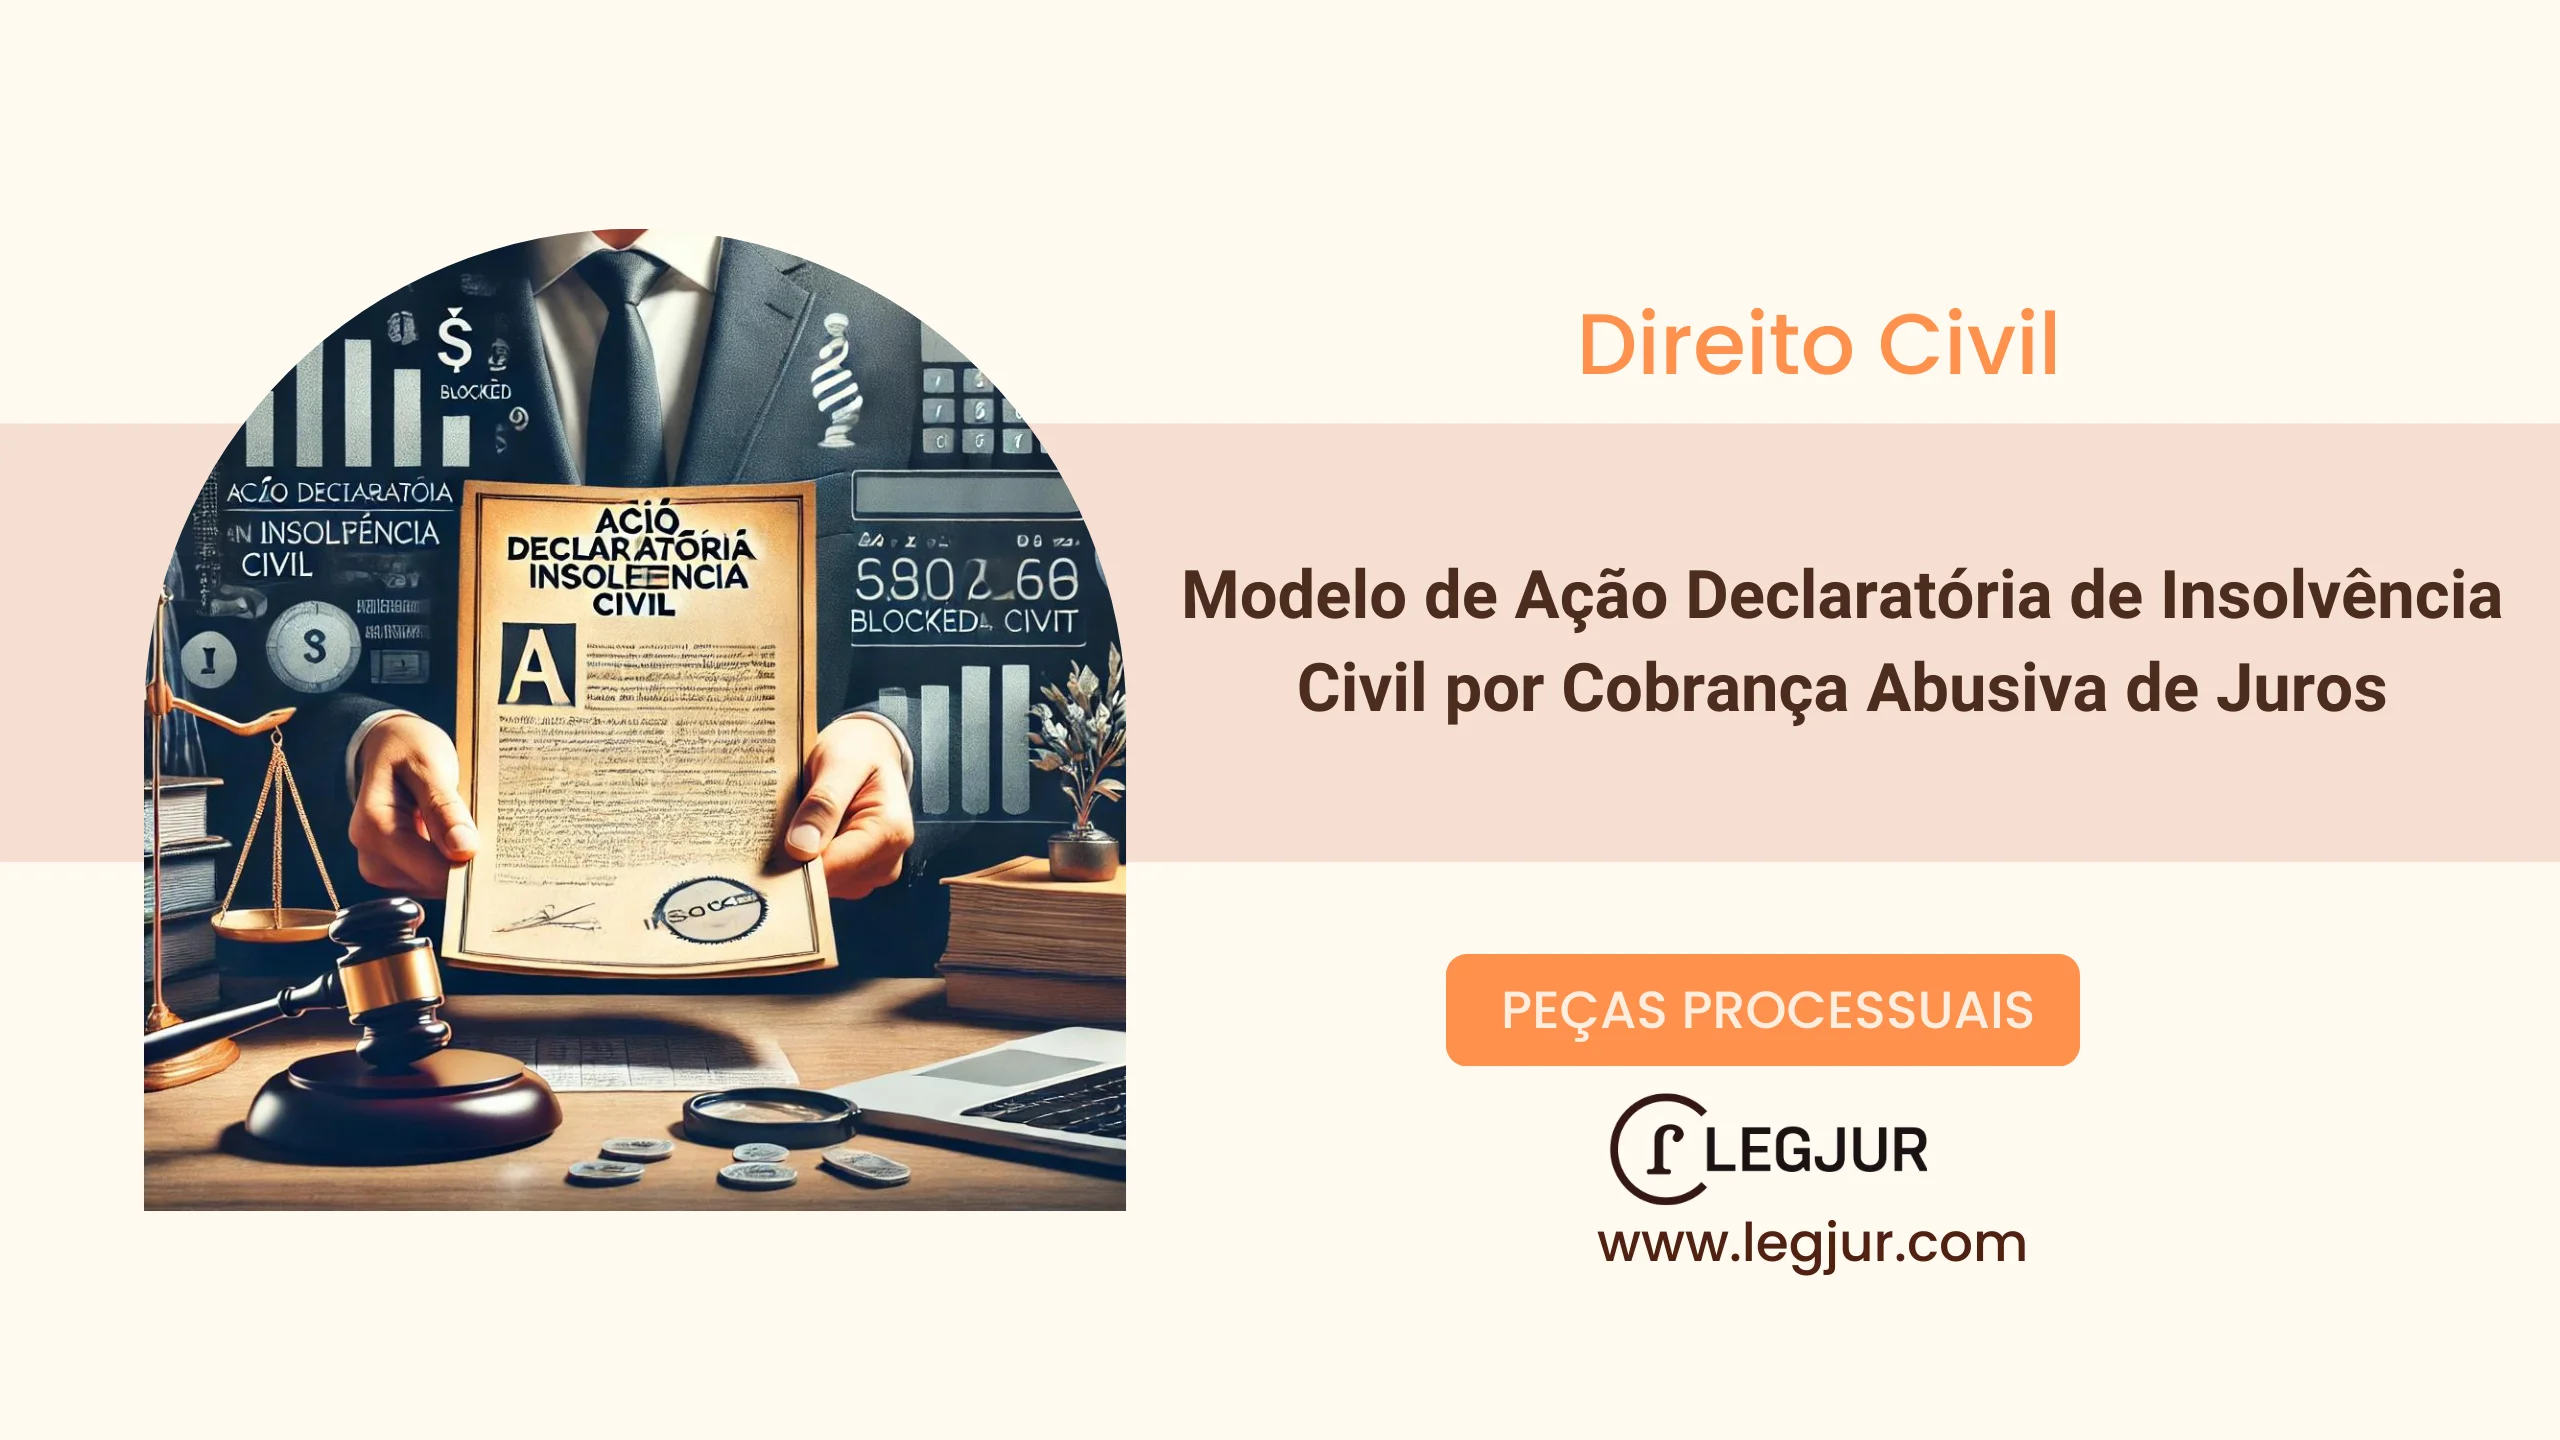 Modelo de Ação Declaratória de Insolvência Civil por Cobrança Abusiva de Juros